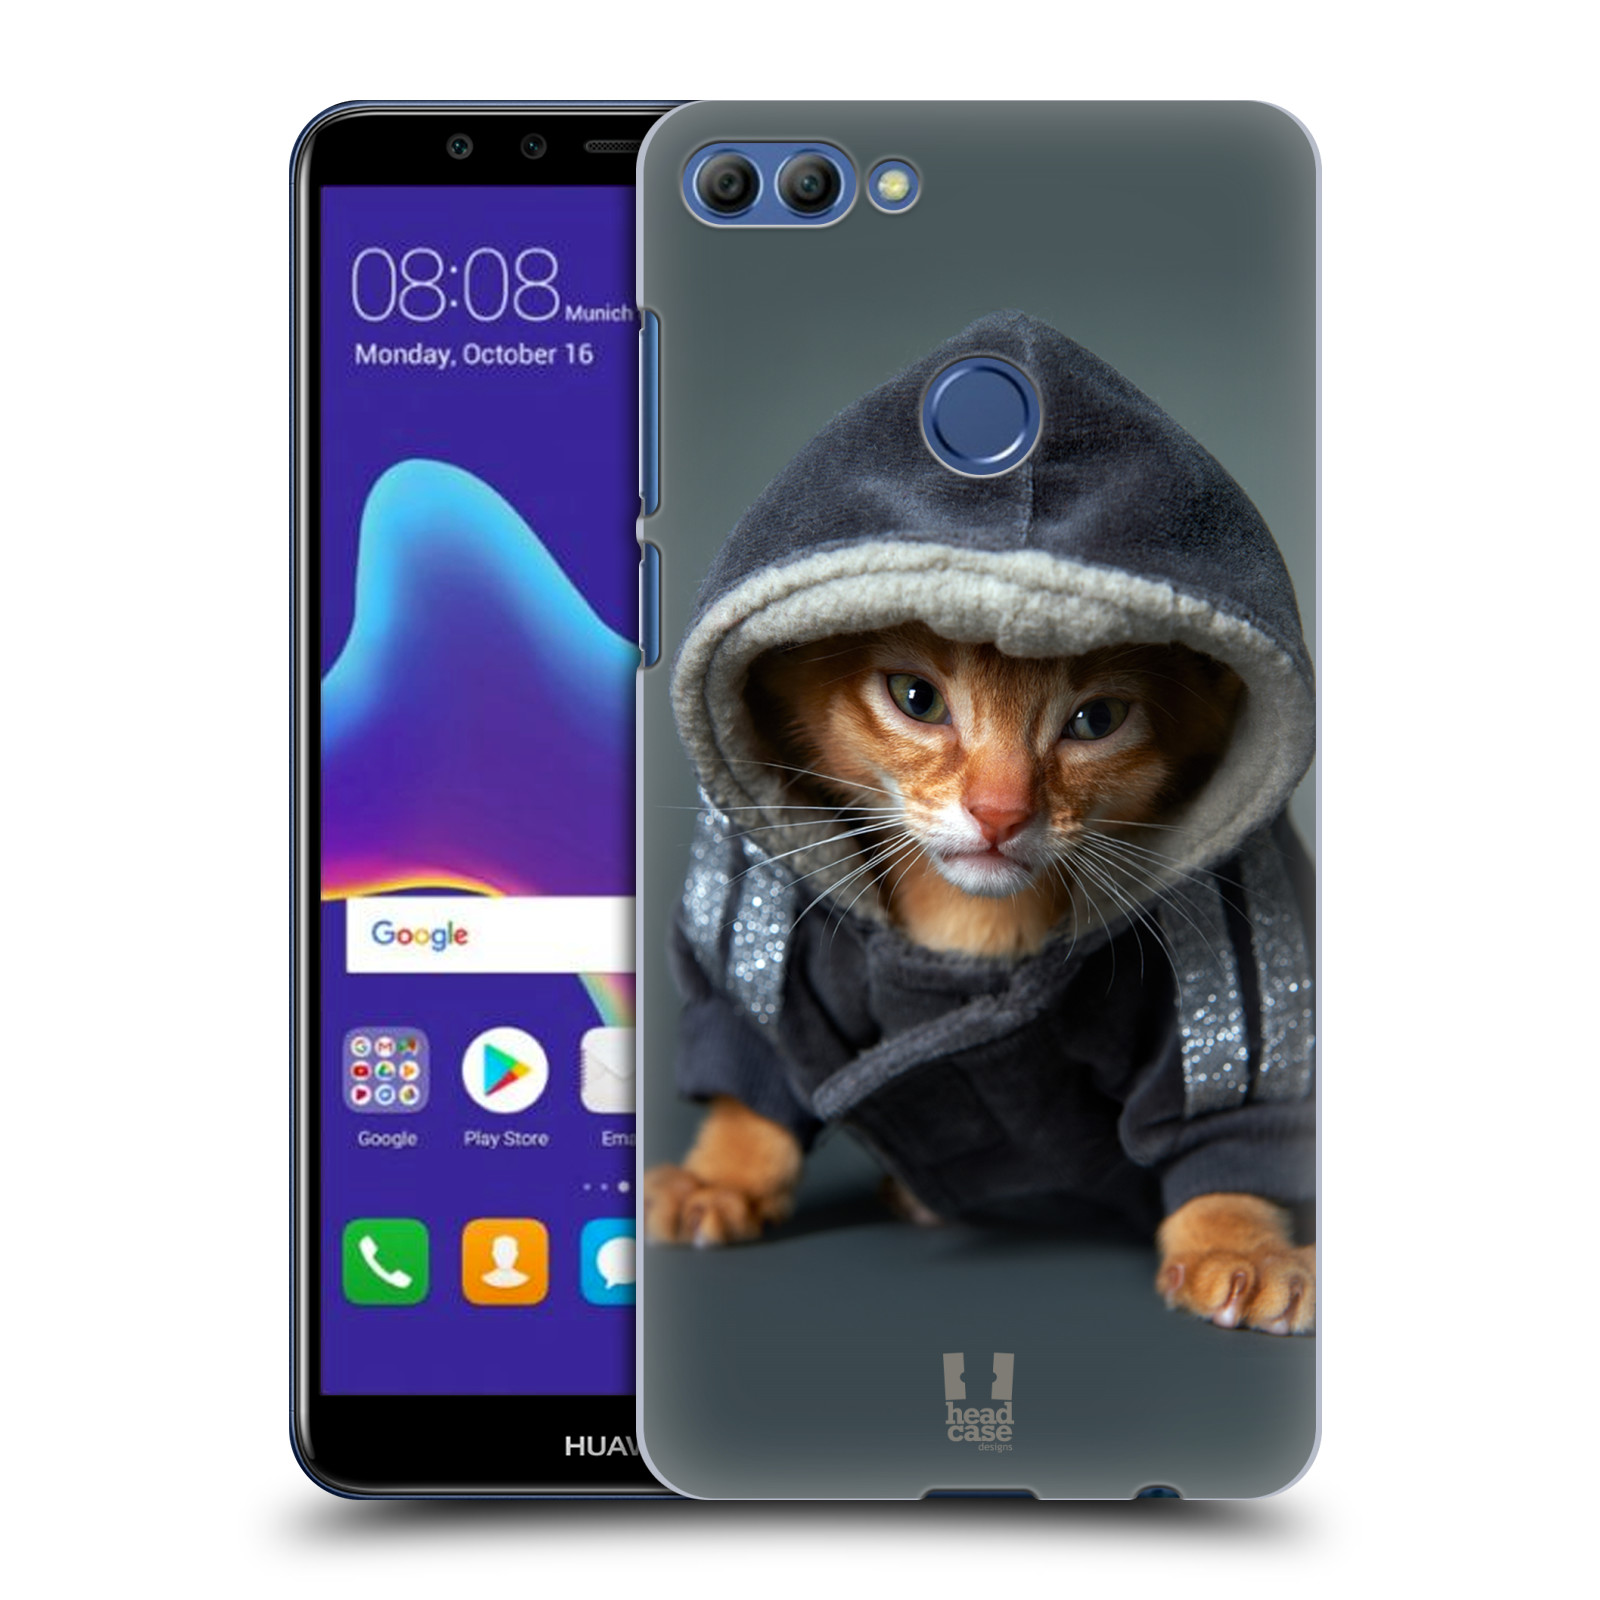 HEAD CASE plastový obal na mobil Huawei Y9 2018 vzor Legrační zvířátka kotě/kočička s kapucí